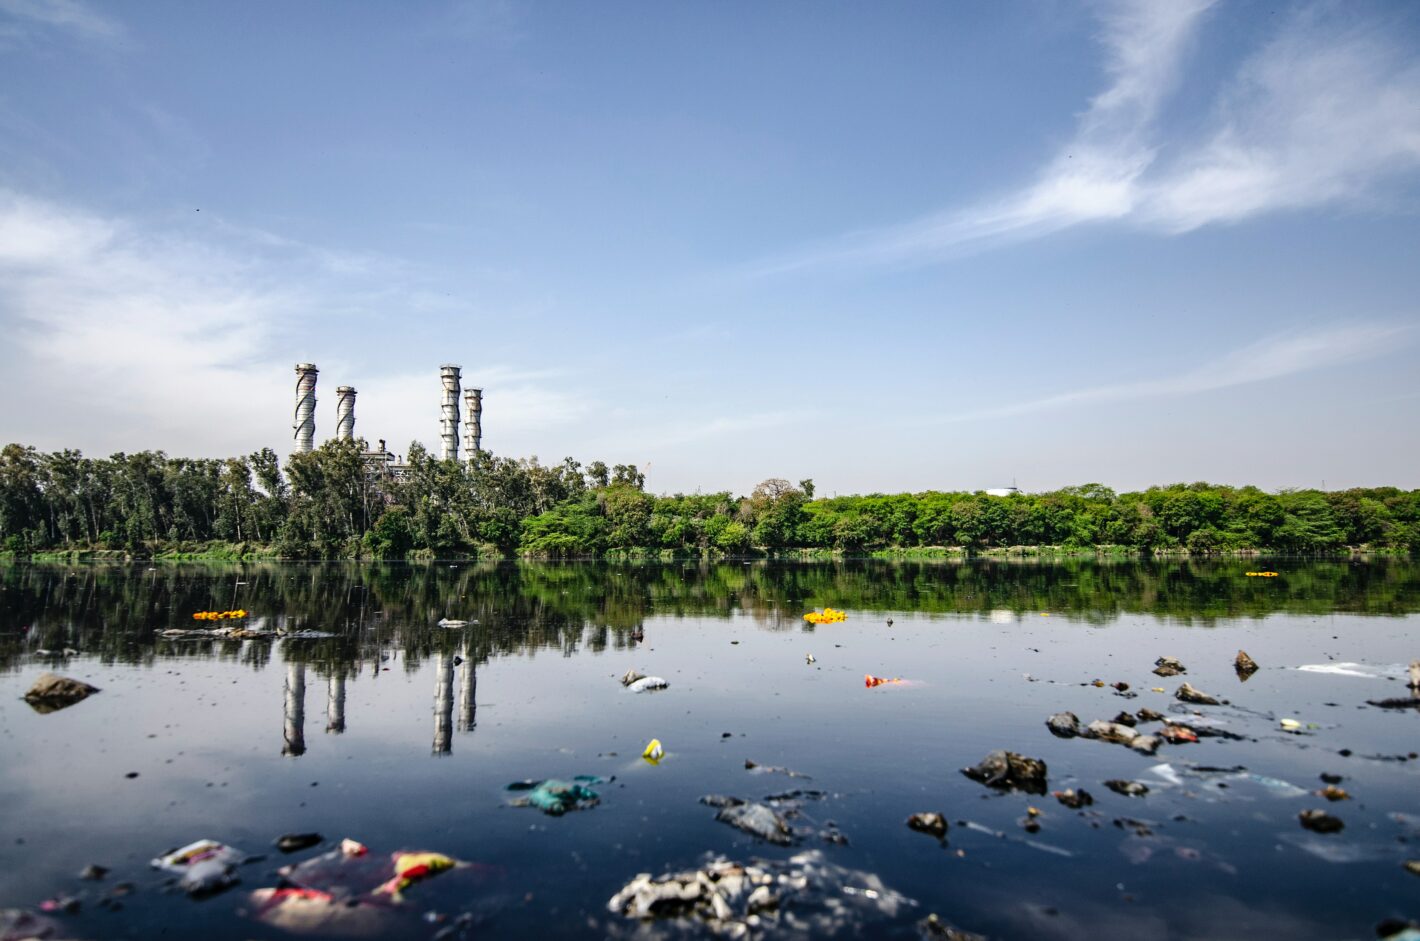 Mit Plastikmüll verschmutztes Gewässer. Im Hintergrund sind Schornsteine einer Fabrik zu sehen.